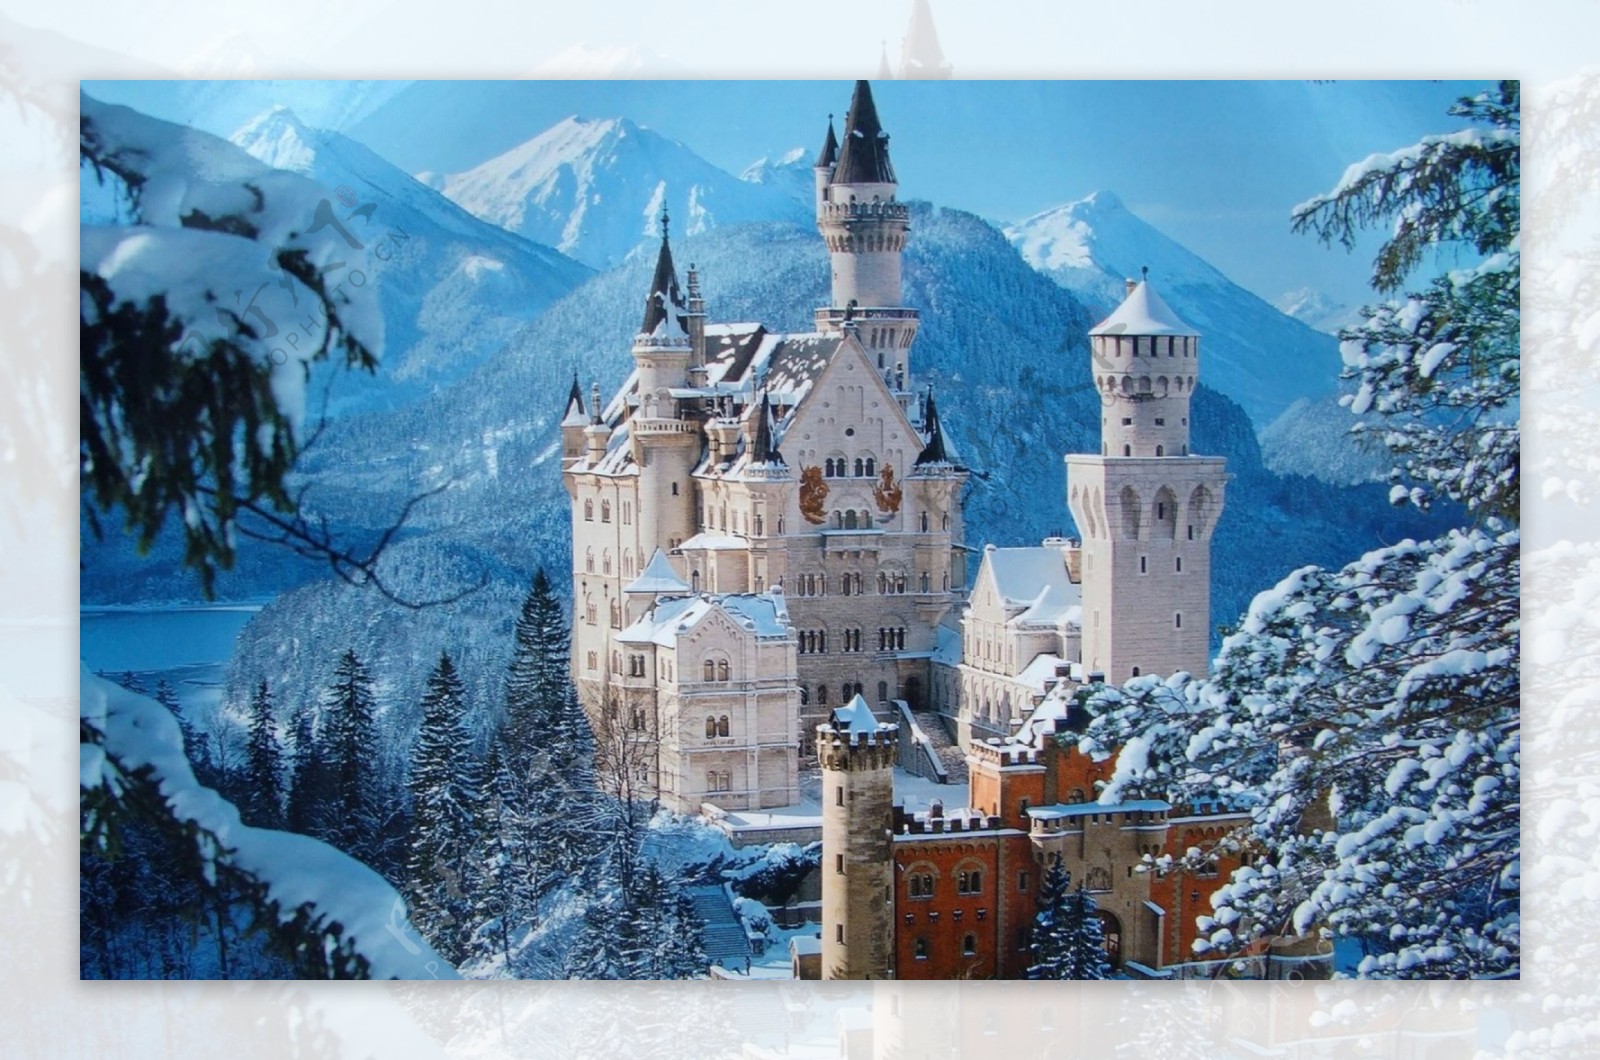 冬天雪山上漂亮的城堡